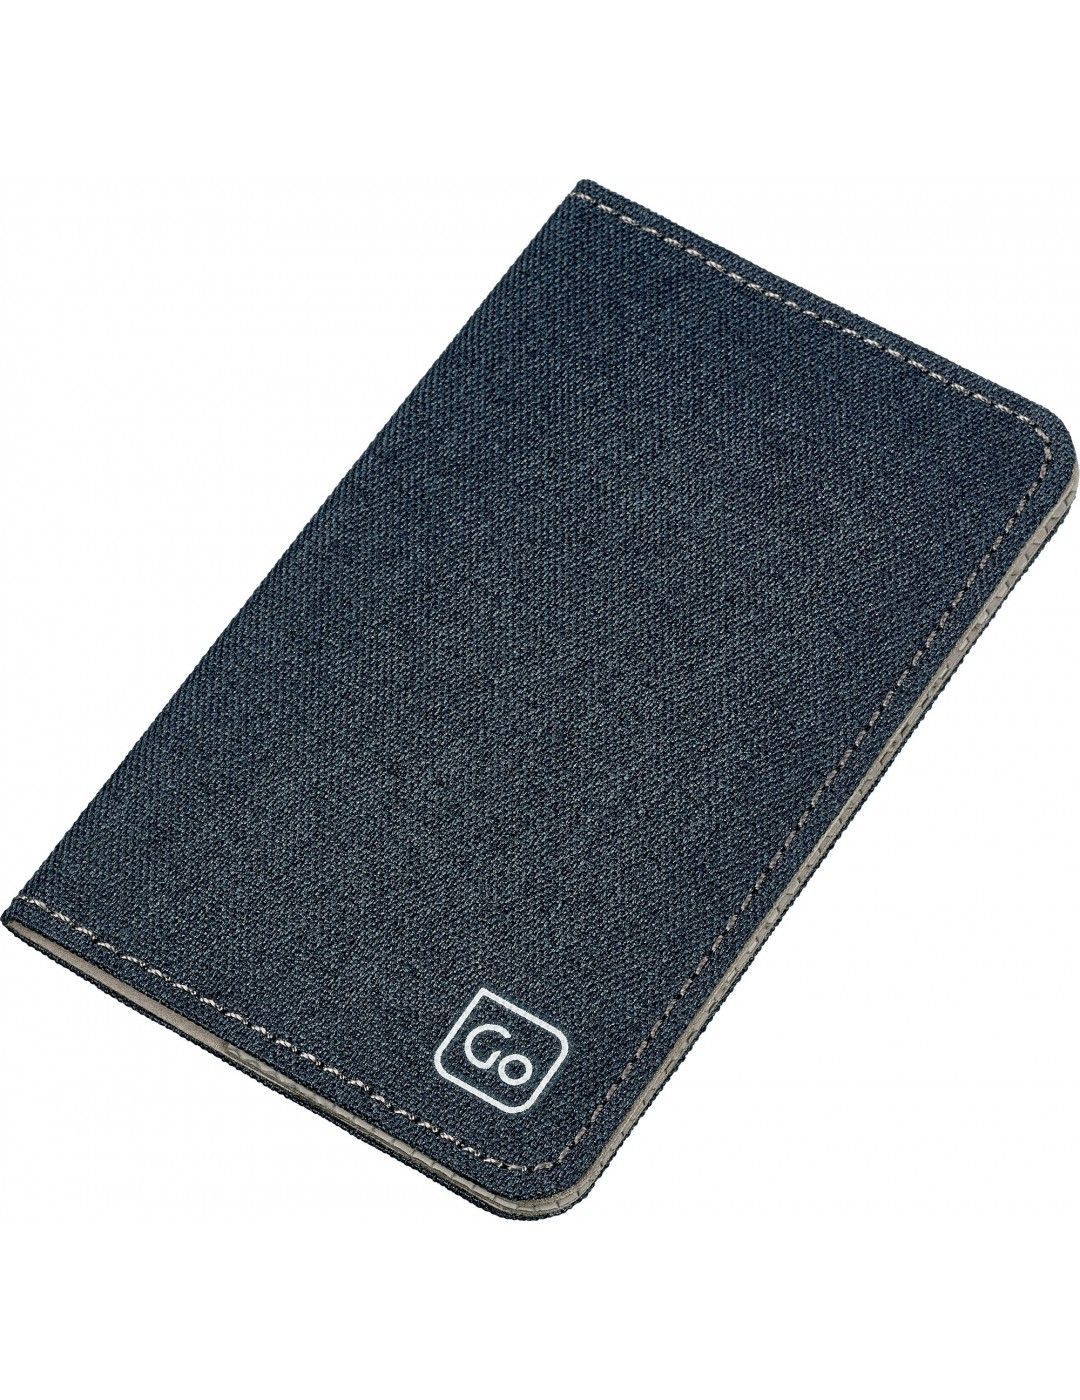 Go Travel Micro Card Portefeuille RFID protégé